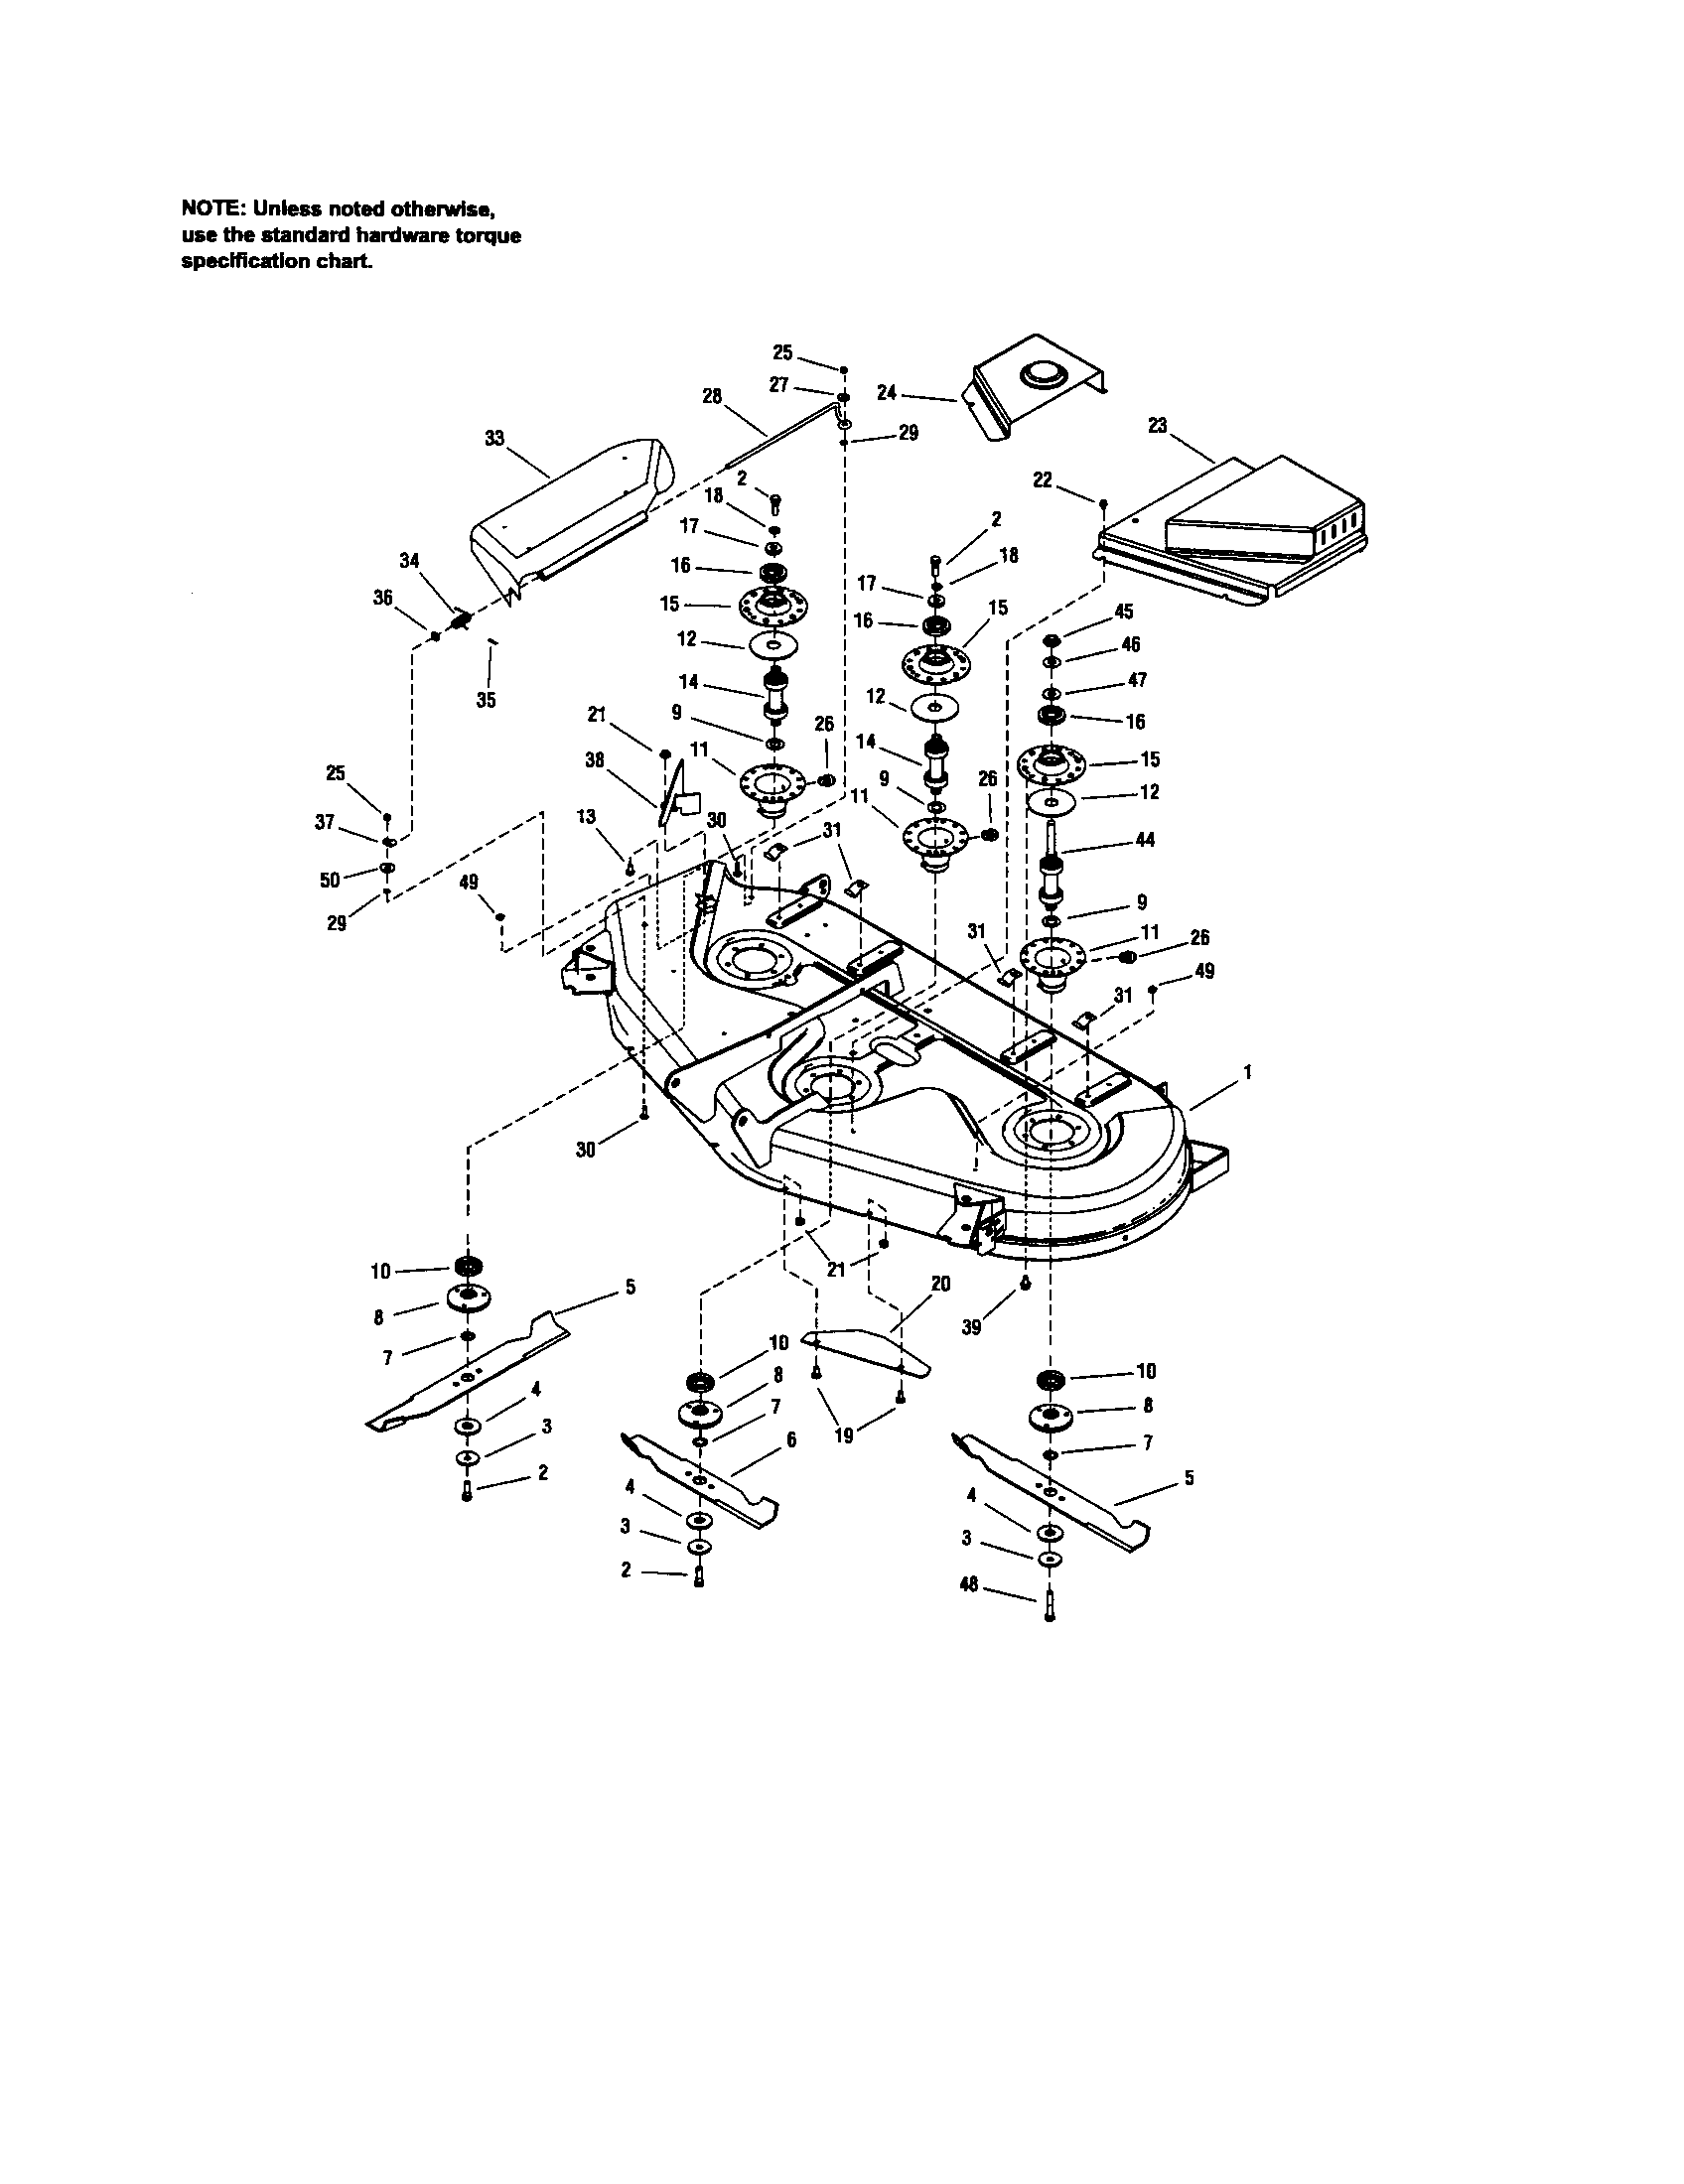 33 Craftsman 54 Mower Deck Parts Diagram Wiring Diagram List